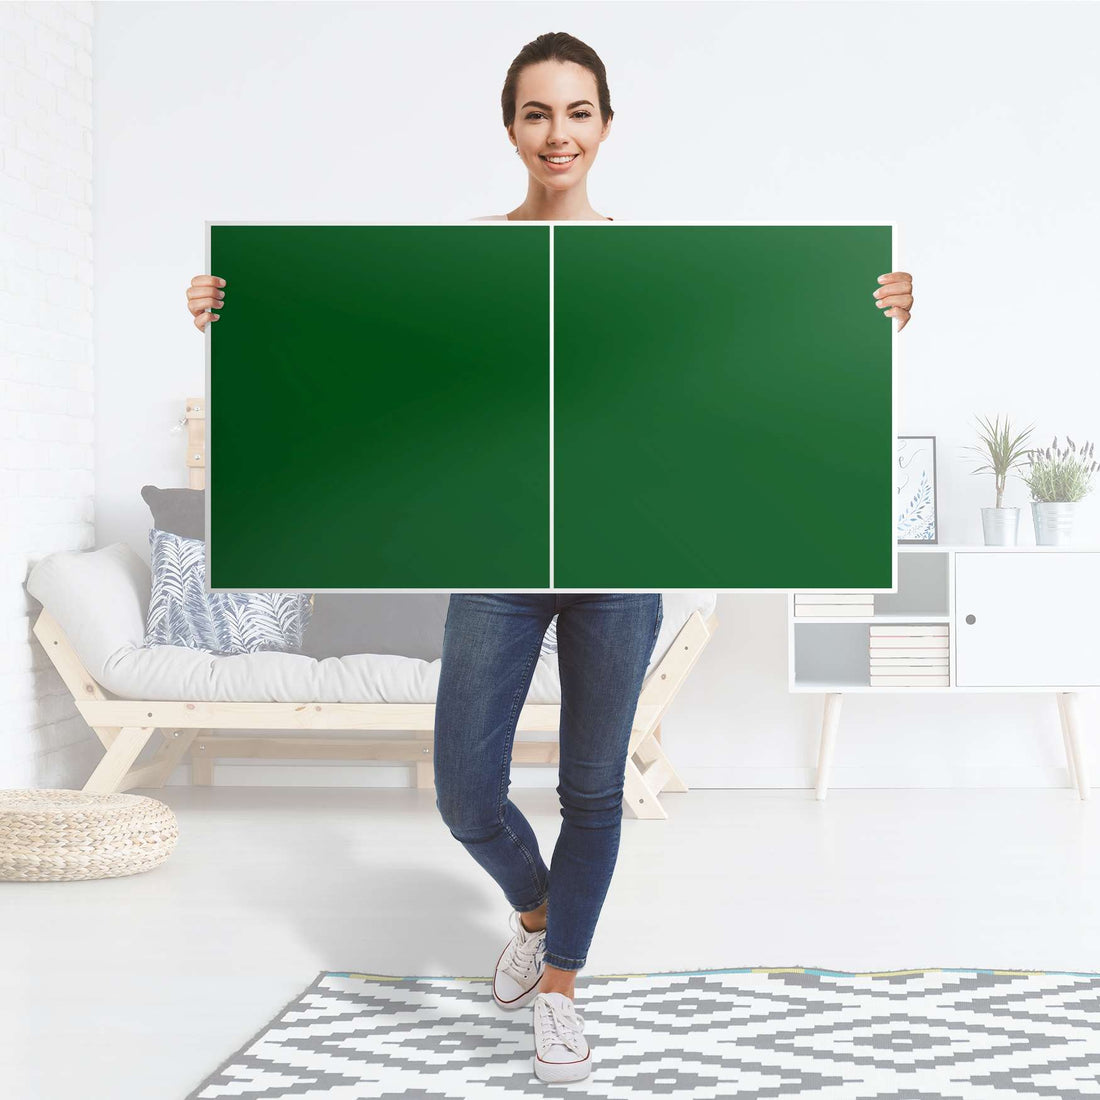 Folie für Möbel Grün Dark - IKEA Besta Regal Quer 2 Türen - Folie